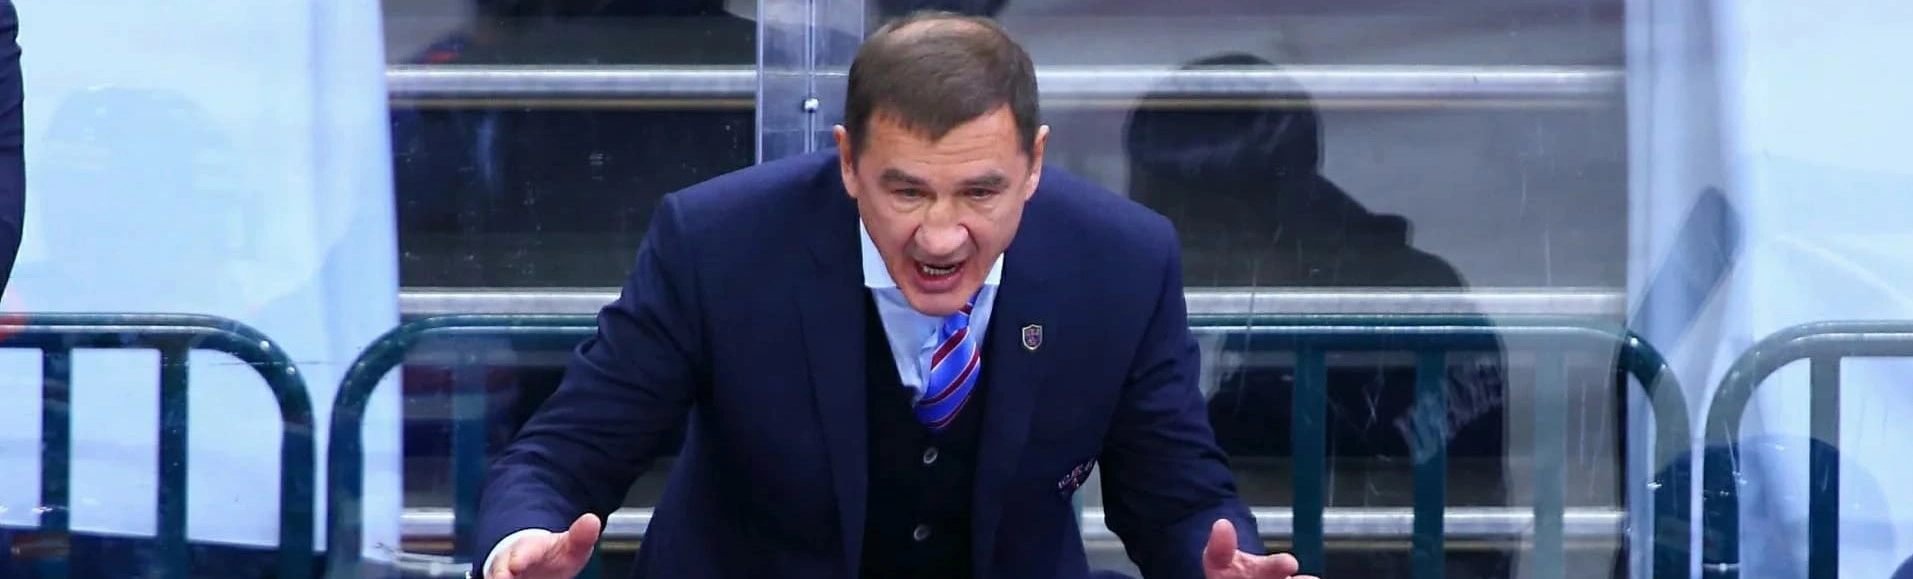 Валерий Брагин высказал свое мнение насчет последнего матча СКА